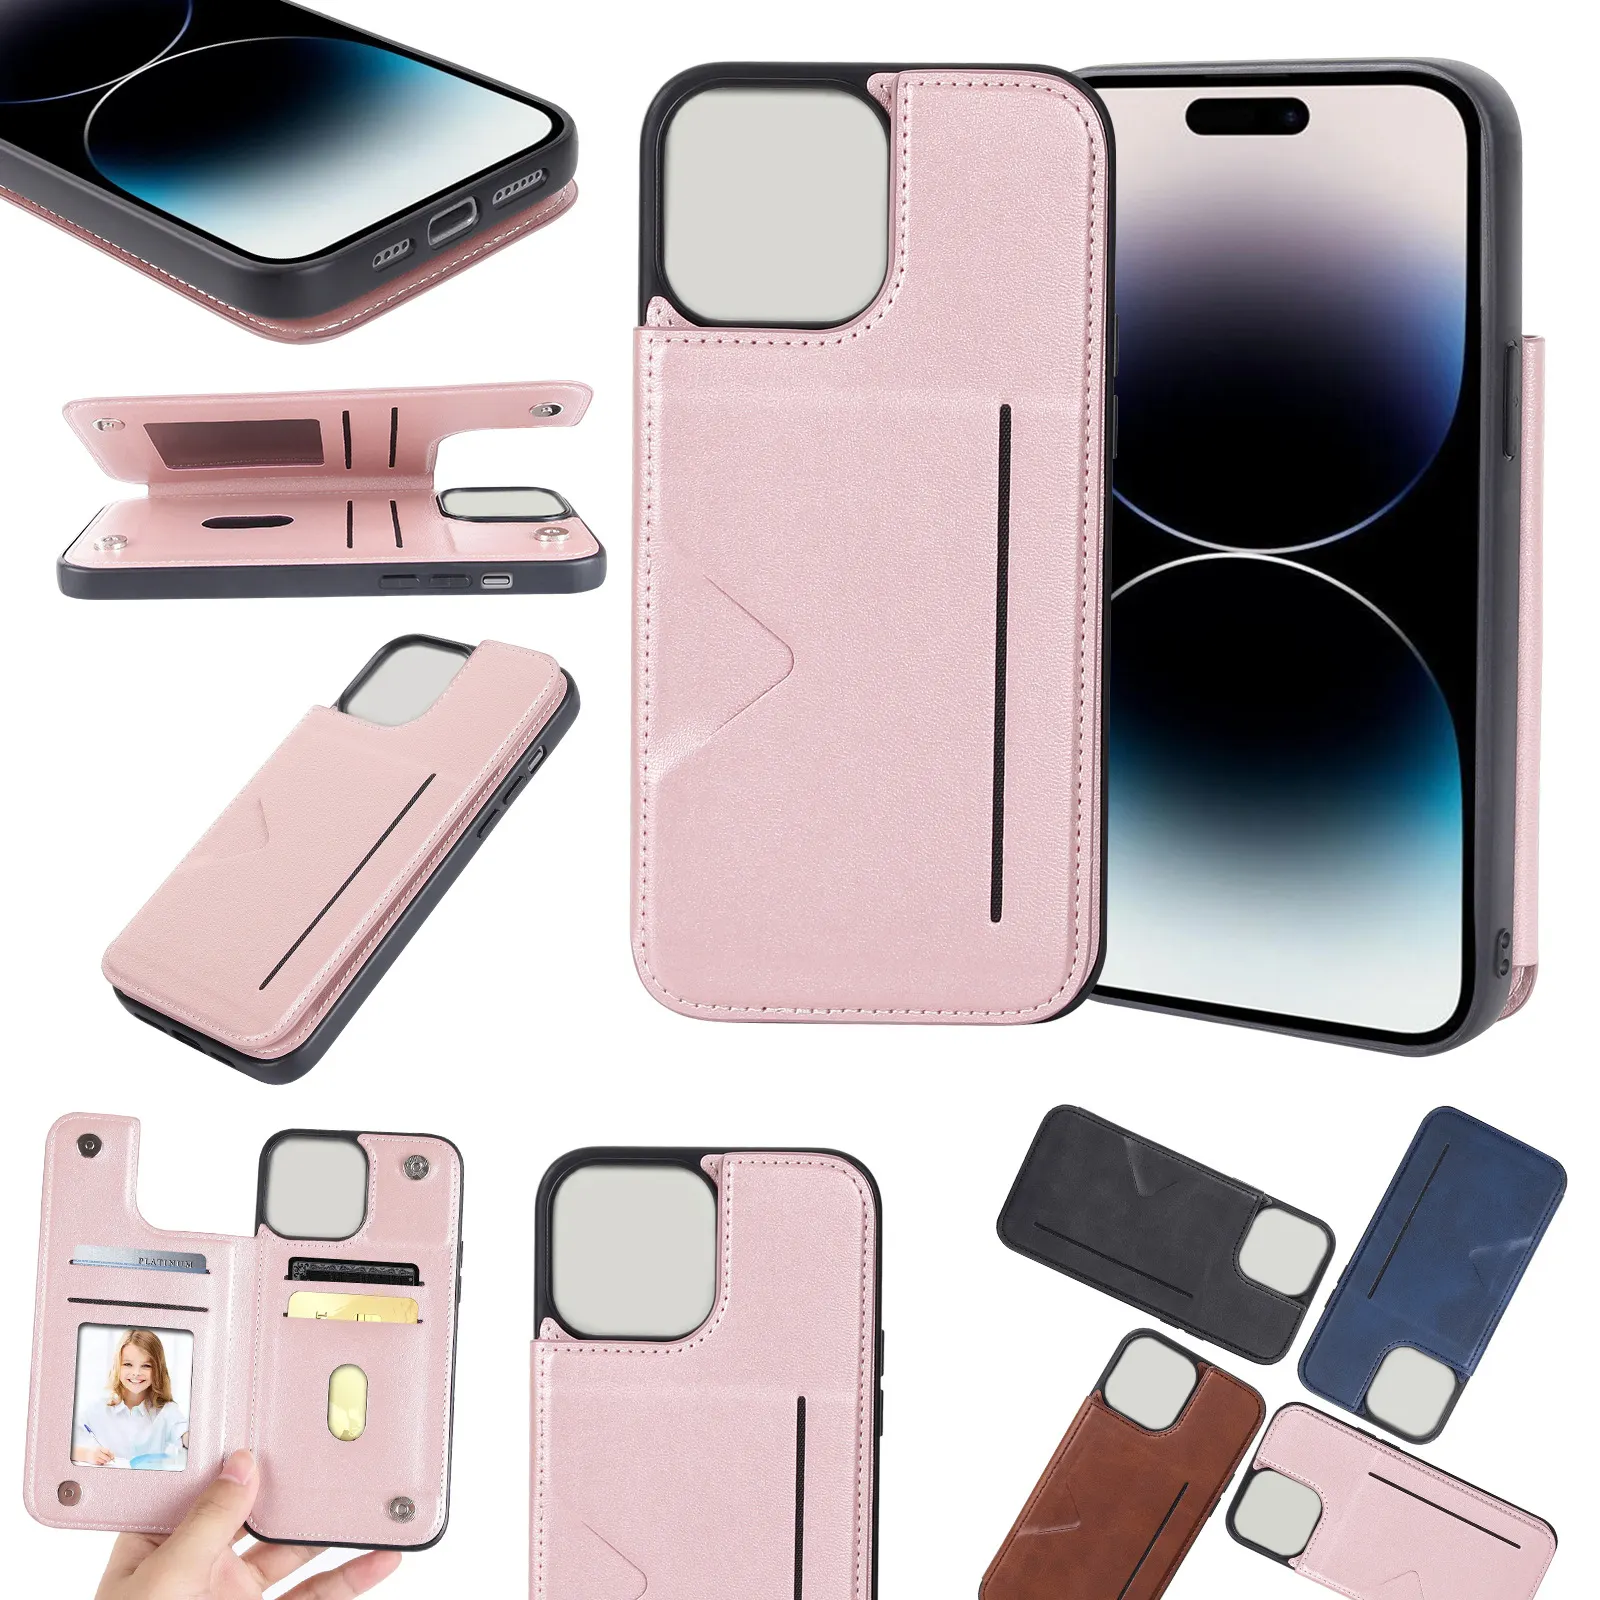 Casing Hanman kulit dengan dompet tas kartu casing kulit ponsel gaya bisnis desain untuk iphone 6 7 8 14 15 plus